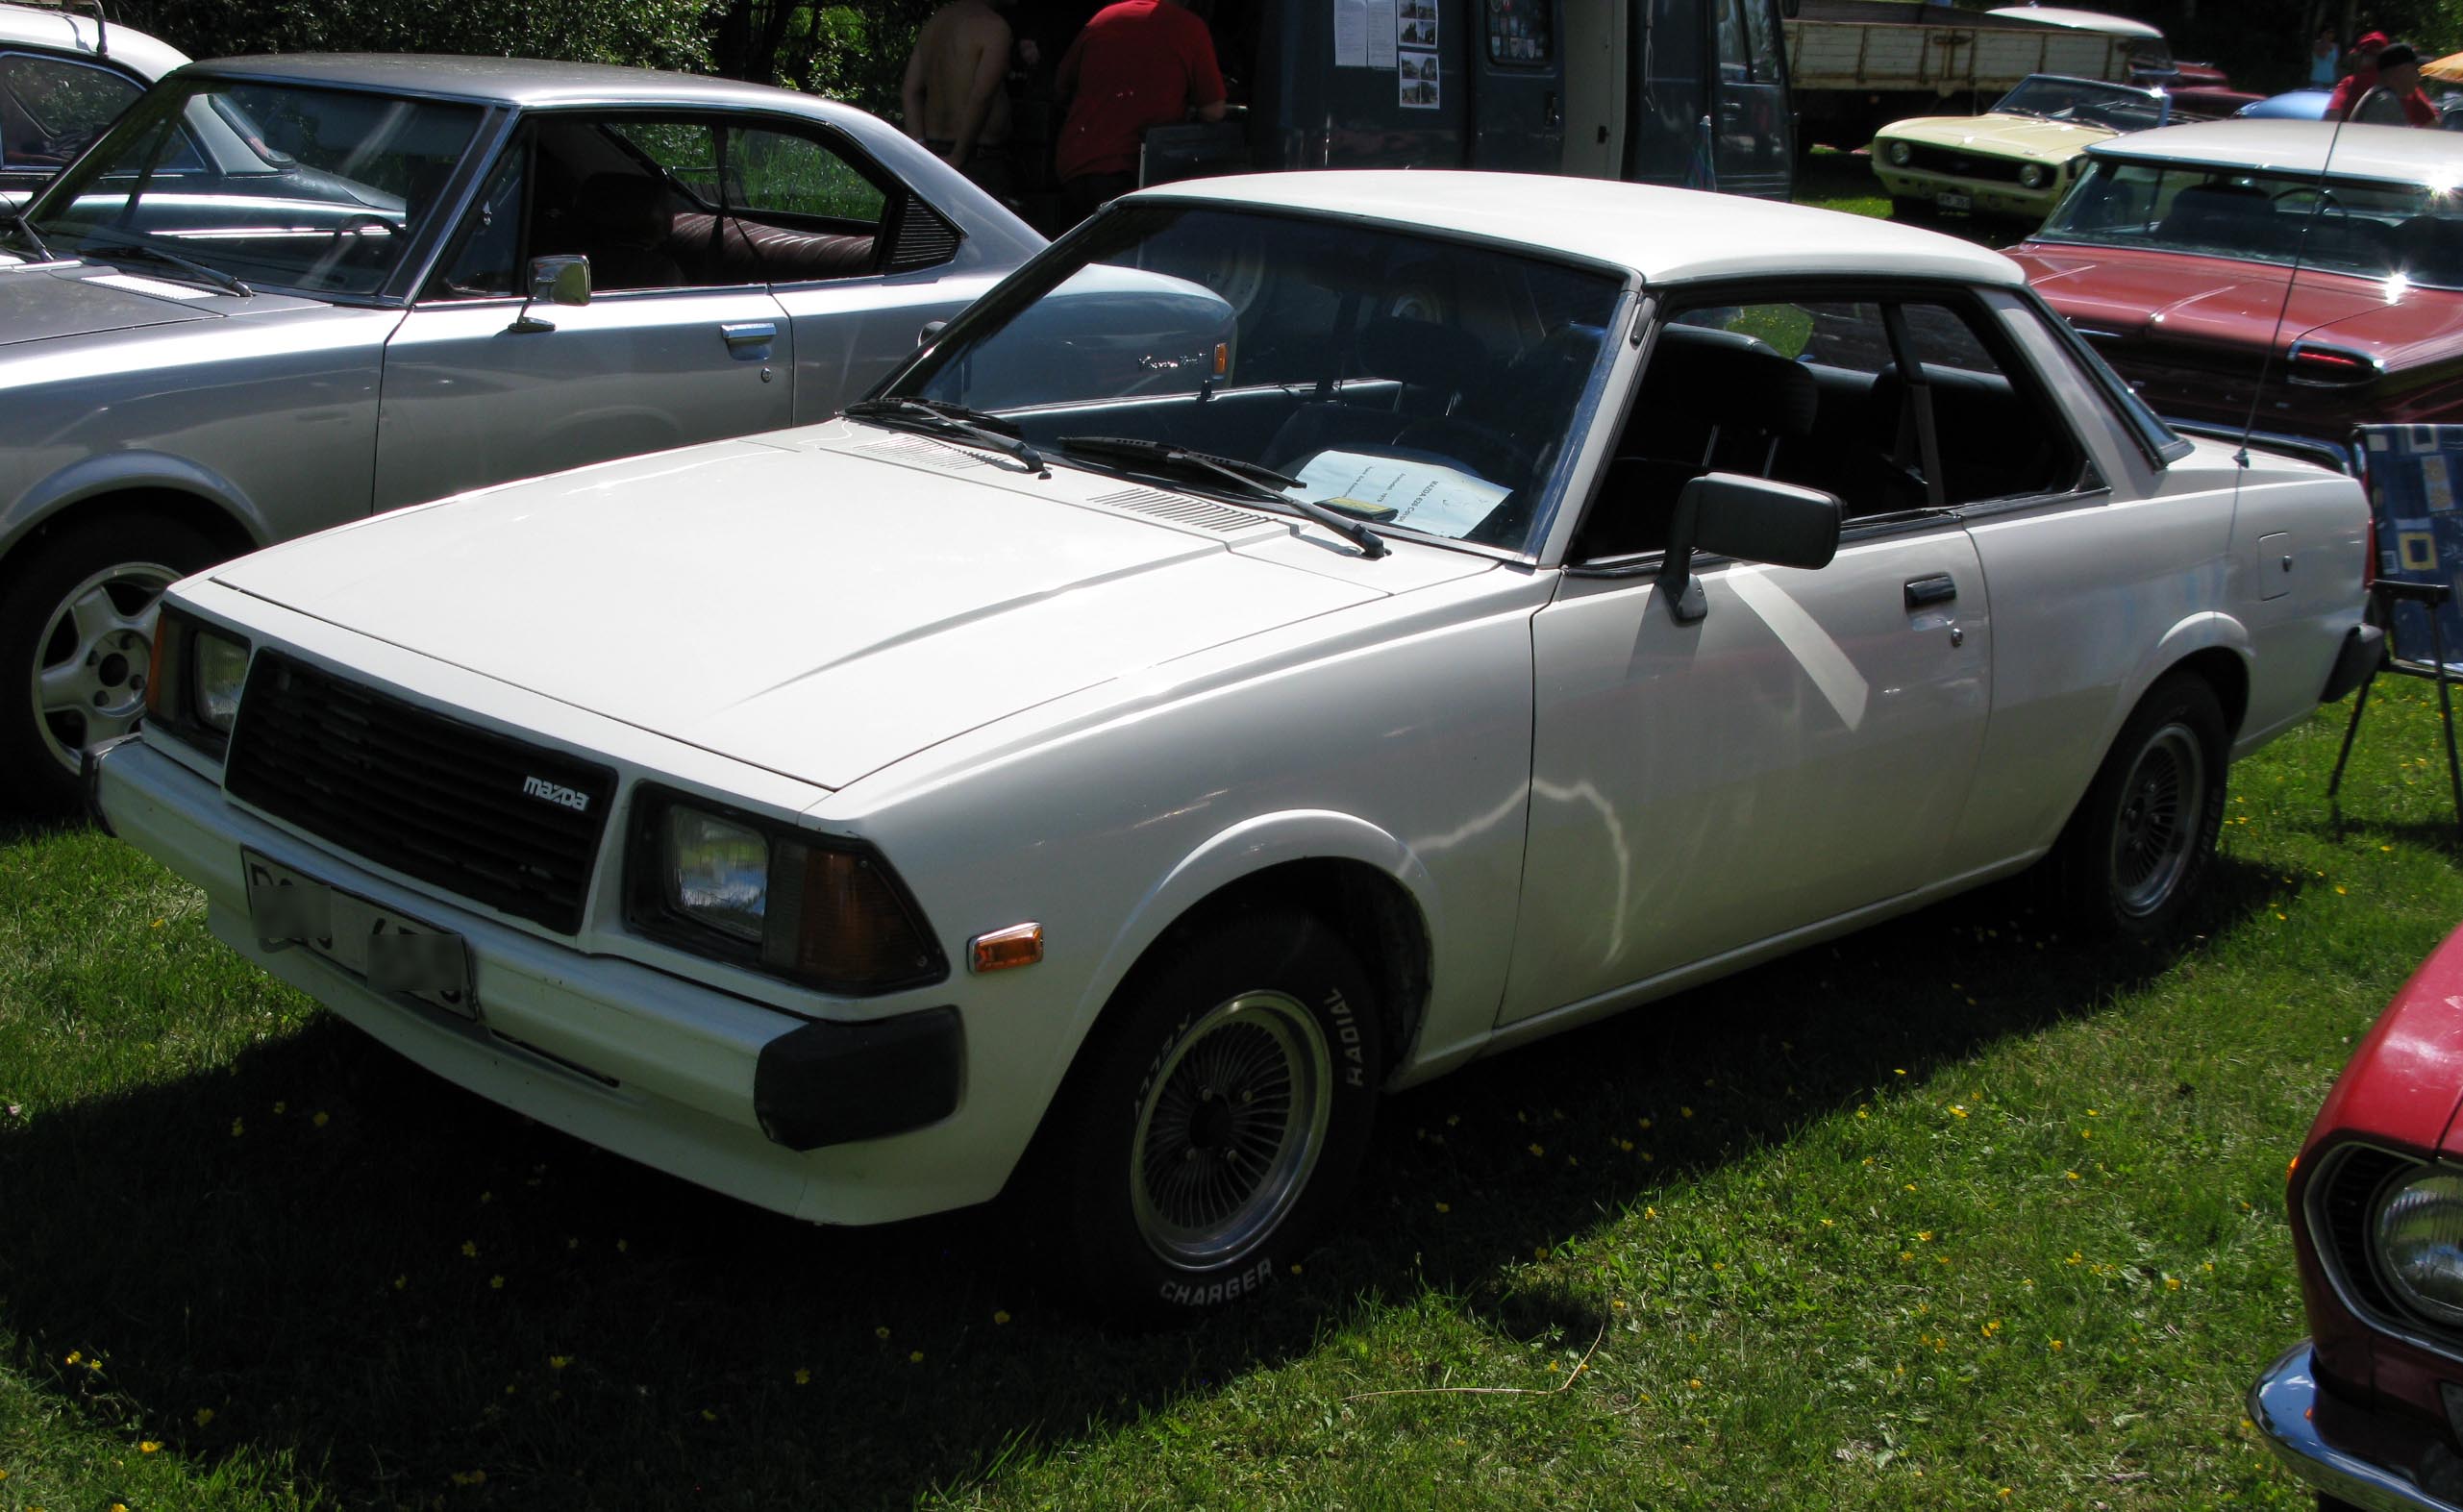 File:1979 Mazda 626 coupe.jpg